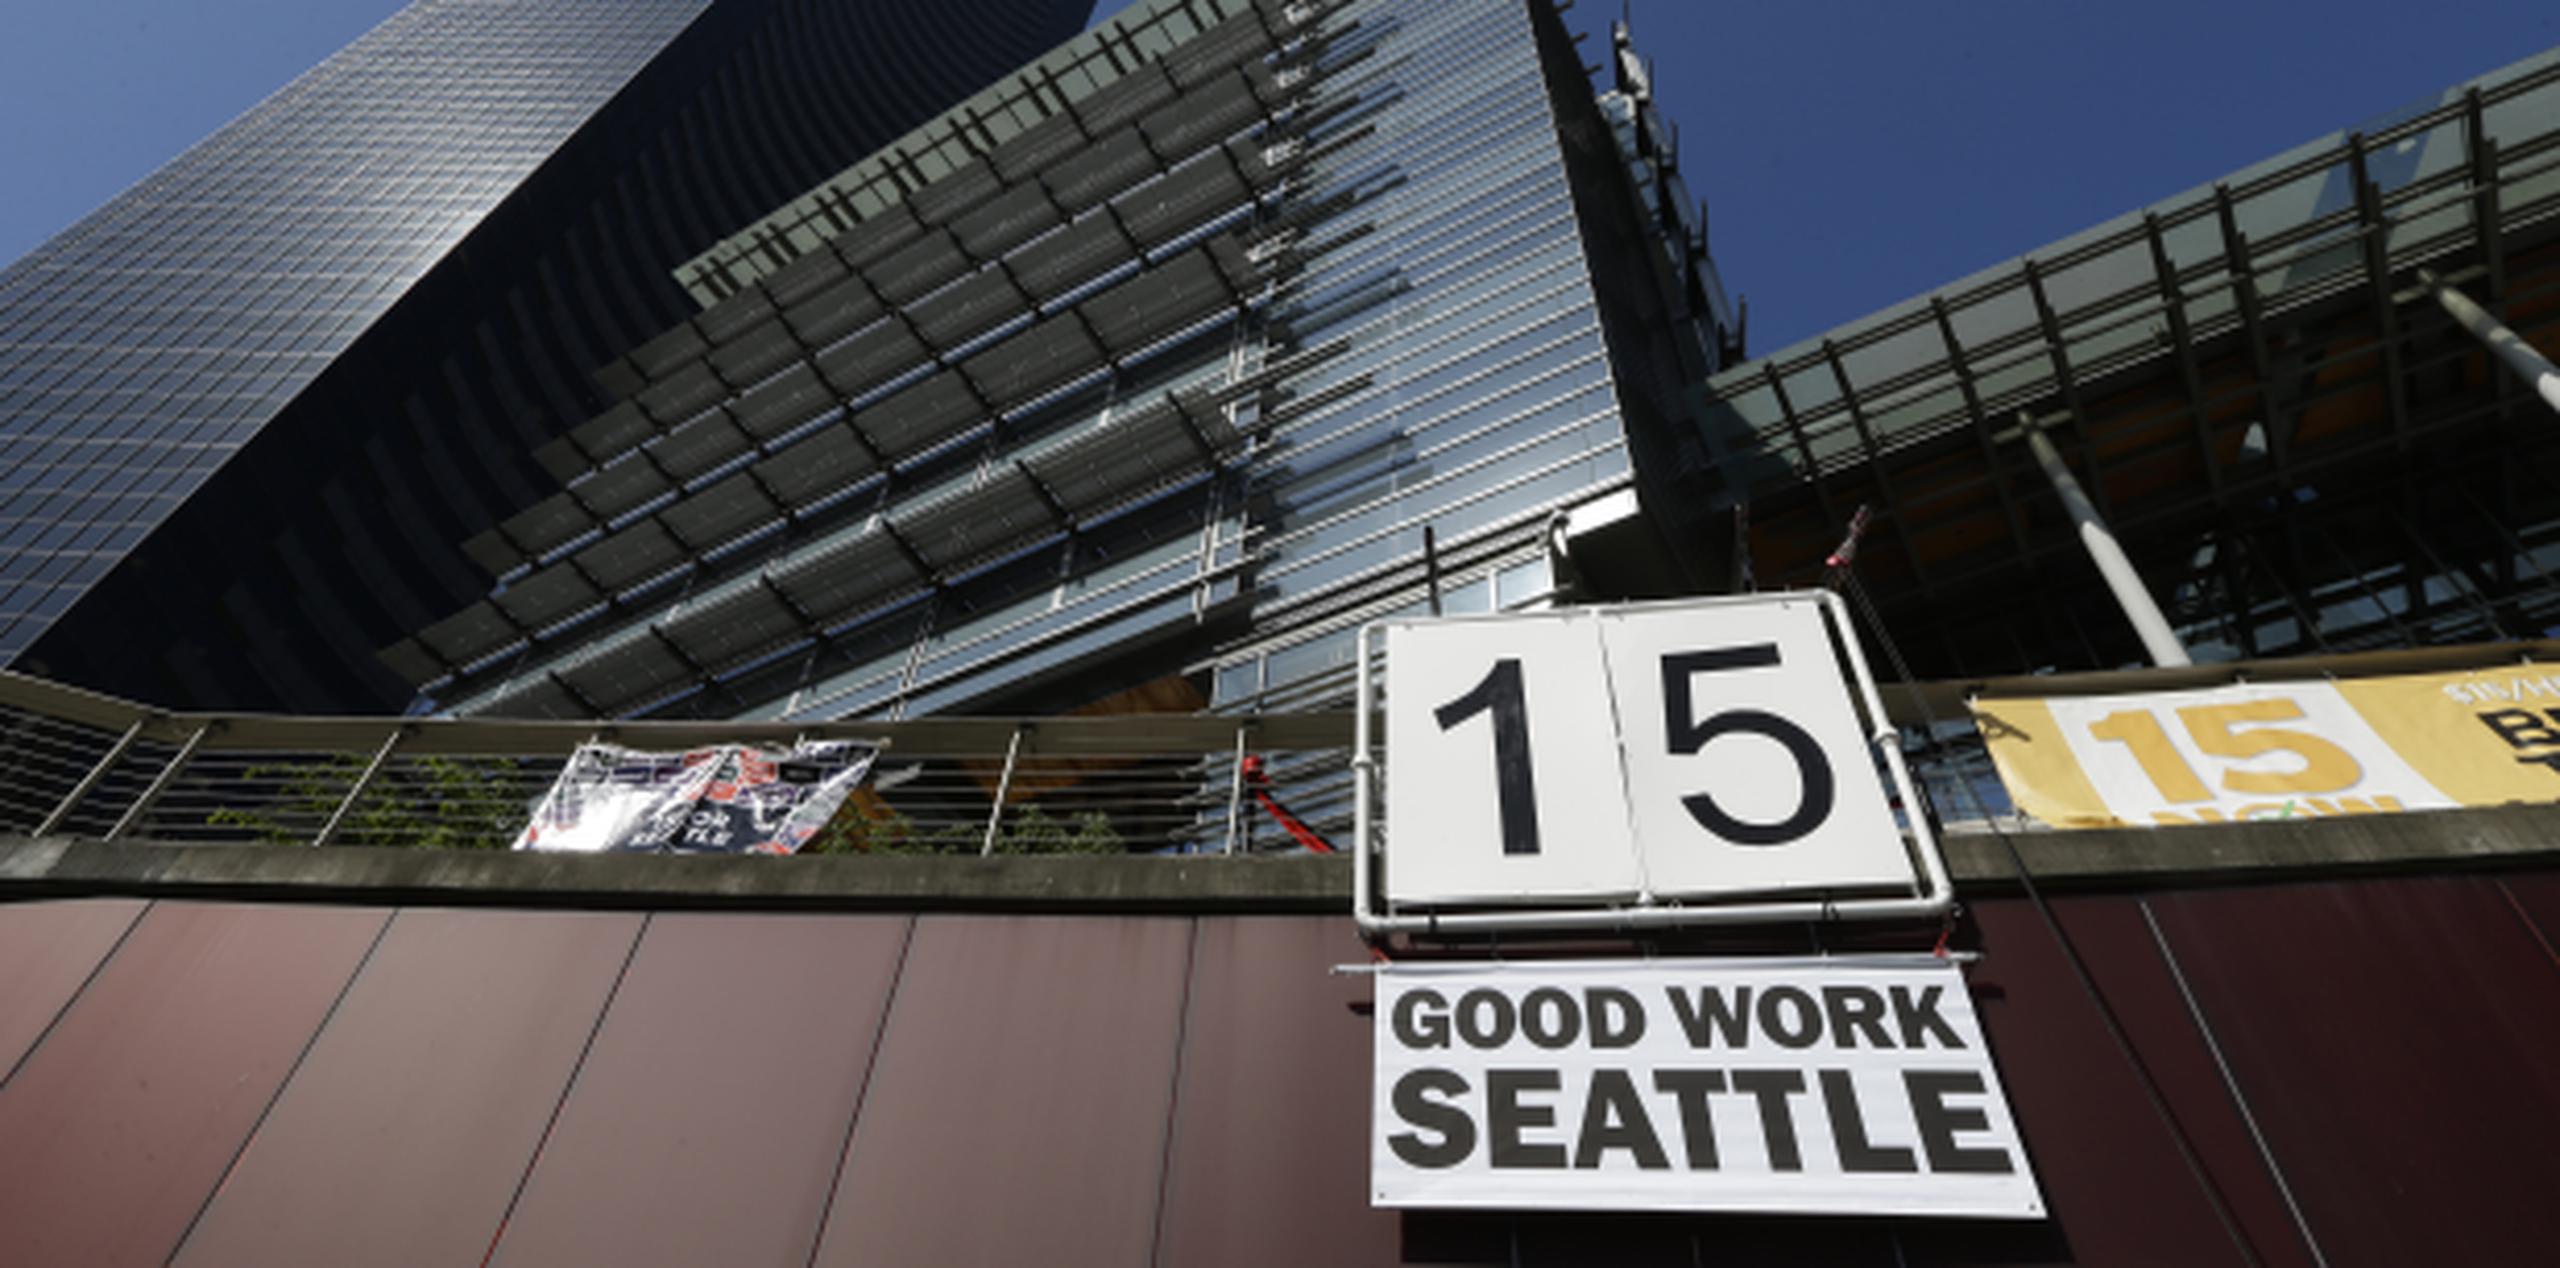 La Corte Suprema se negó a atender el reclamo de los propietarios de franquicias de Seattle alegaban que el aumento los discrimina al tratarlos como si fueran empresas grandes. (AP/Ted S. Warren, File)
